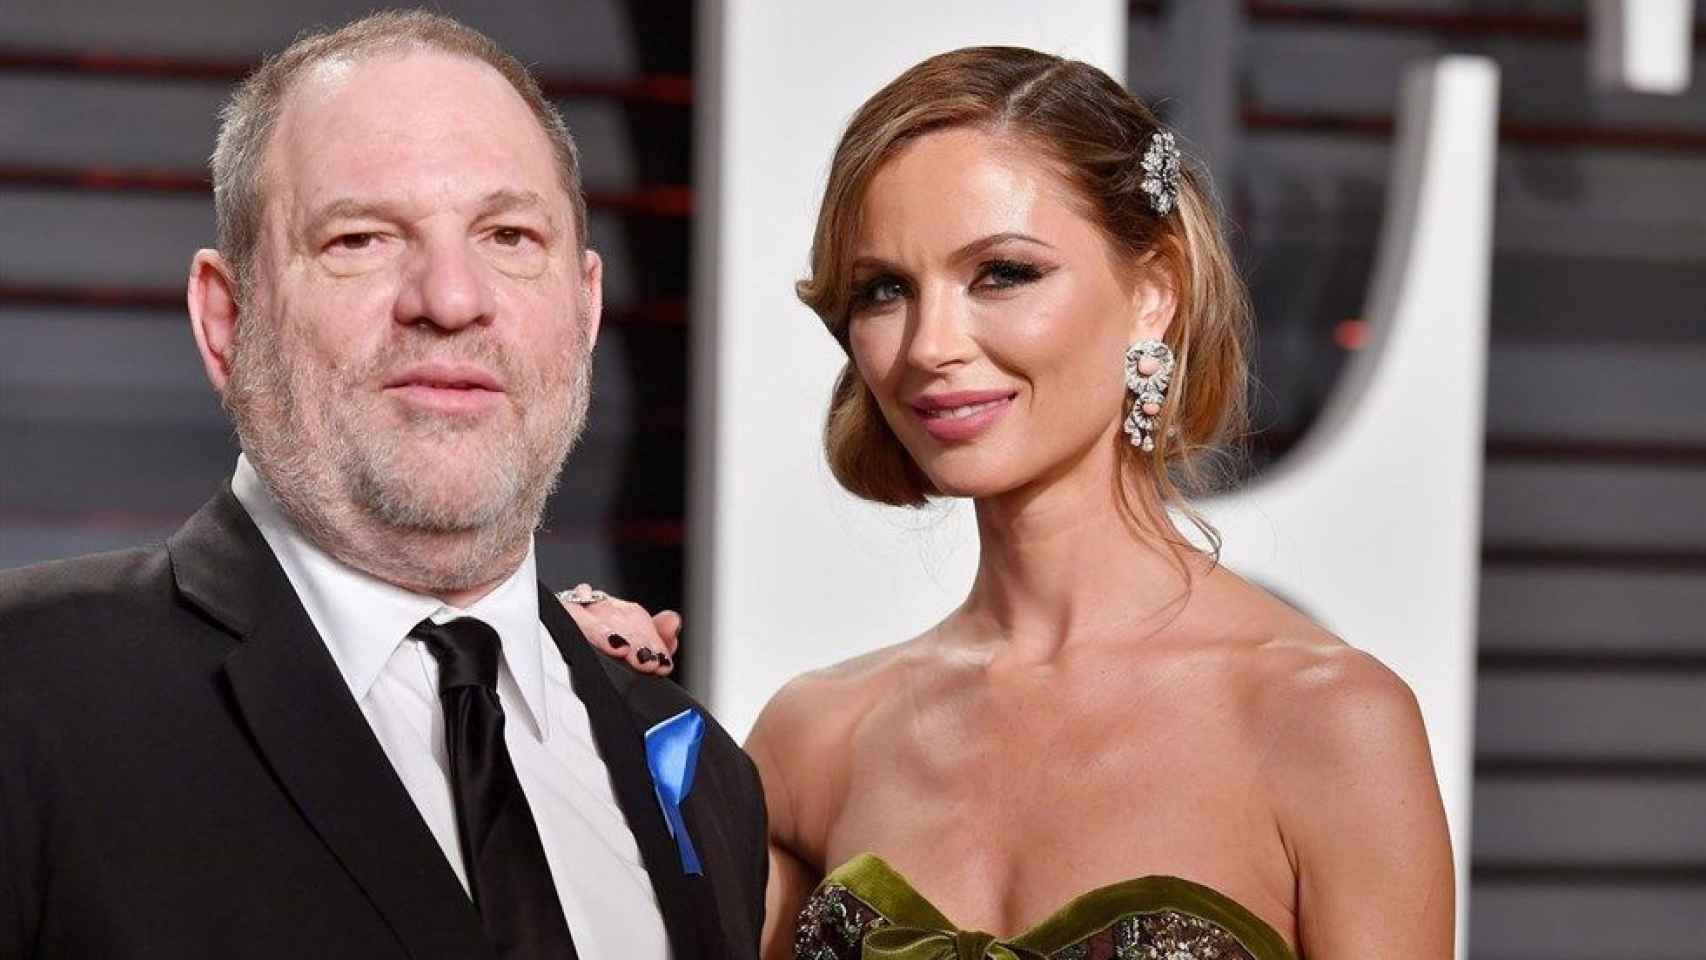 El productor Harvey Weinstein ha sido denunciado por acoso sexual